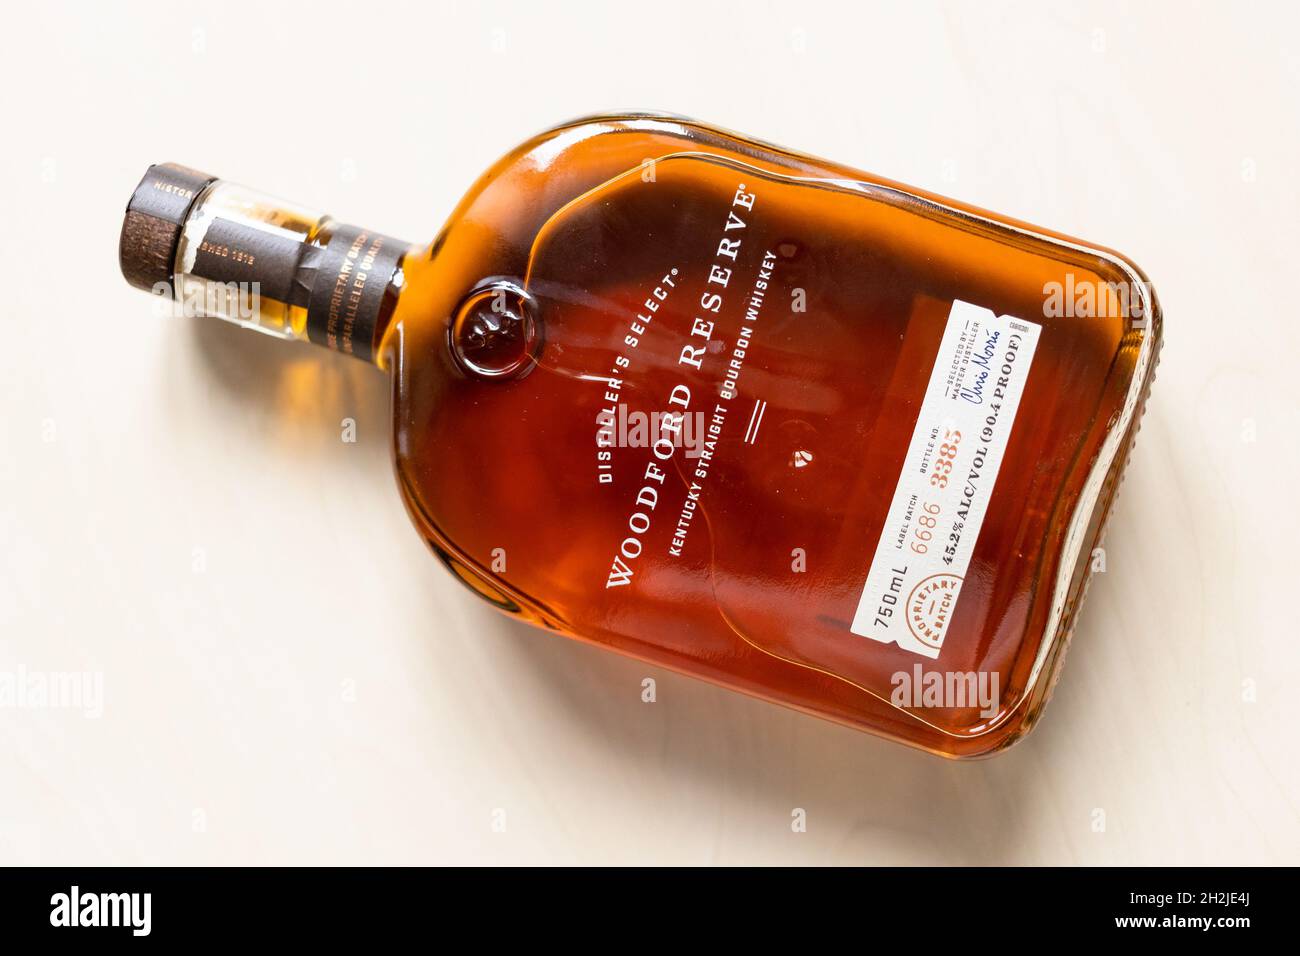 Moscou, Russie - 22 septembre 2021 : vue de dessus d'une bouteille couchée avec le whisky bourbon droit de Woodford Reserve sur une table lumineuse.La fabrication du bourbon fin a commencé Banque D'Images